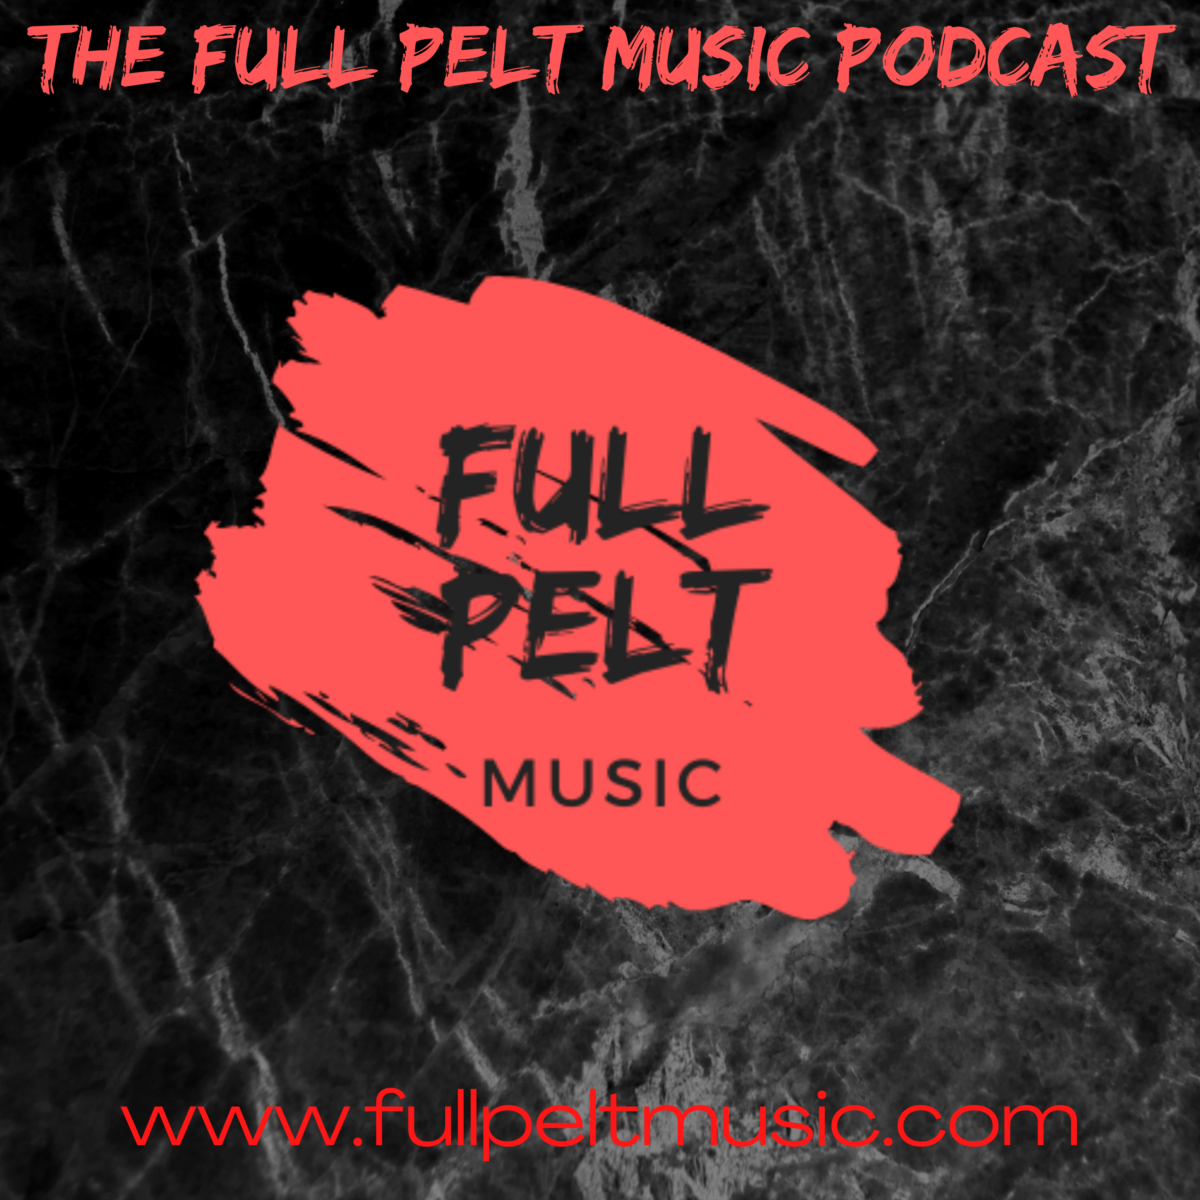 The Full Pelt Music Podcast